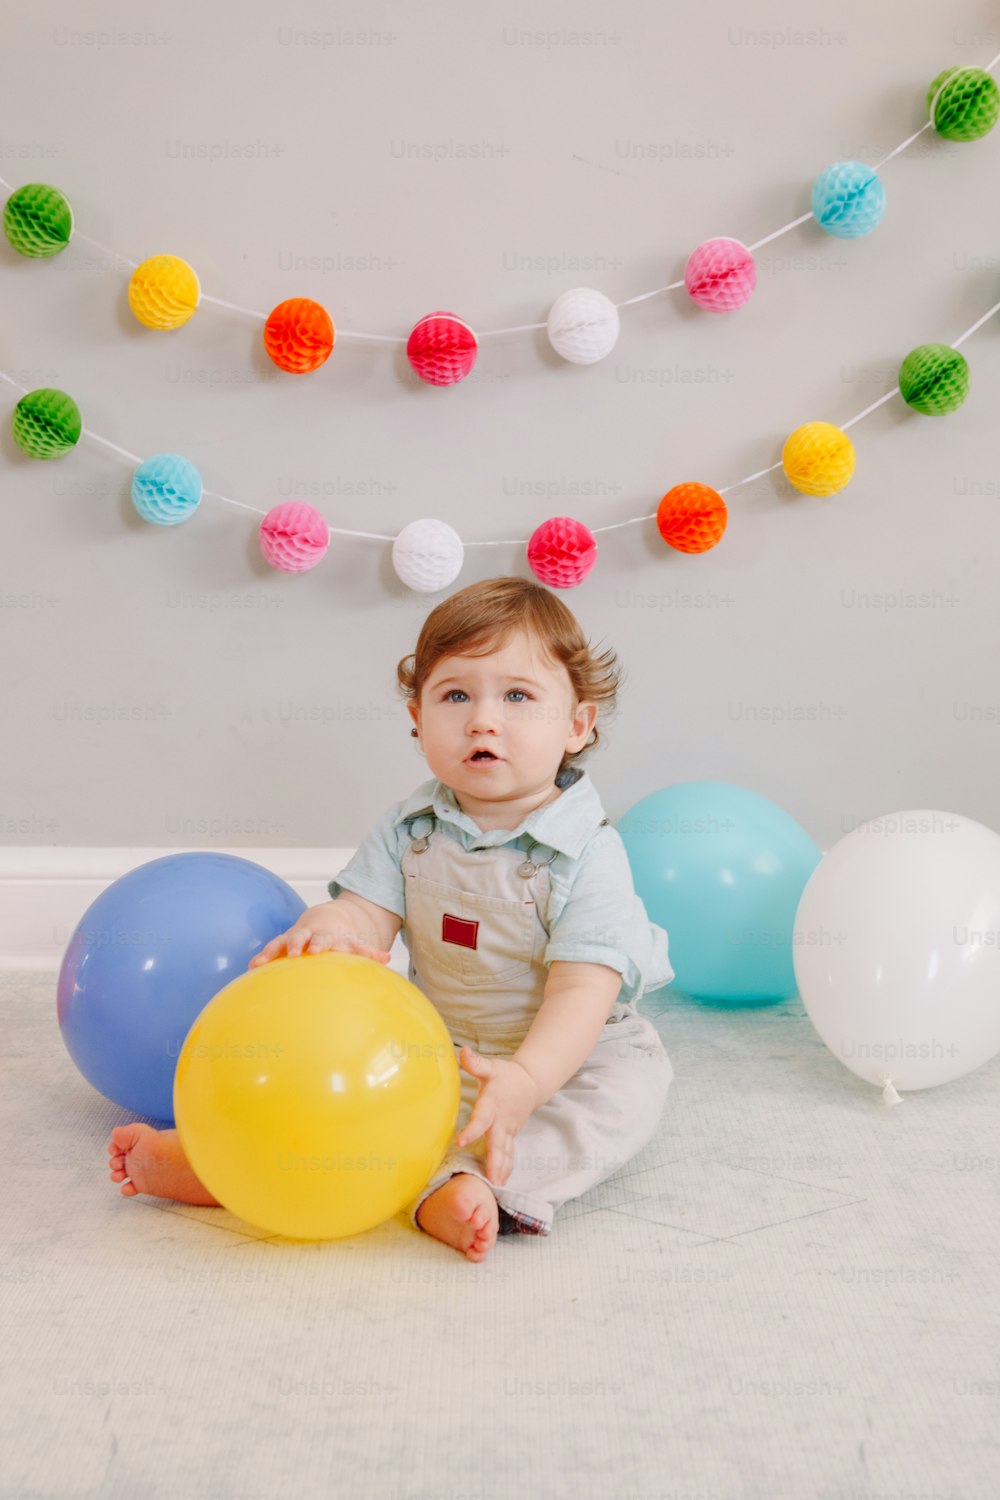 Divertido bebé caucásico celebrando su primer cumpleaños. Niño niño pequeño sentado en el suelo con globos de colores. Celebración de evento o fiesta en el interior de la casa. Concepto de estilo de vida de feliz cumpleaños.